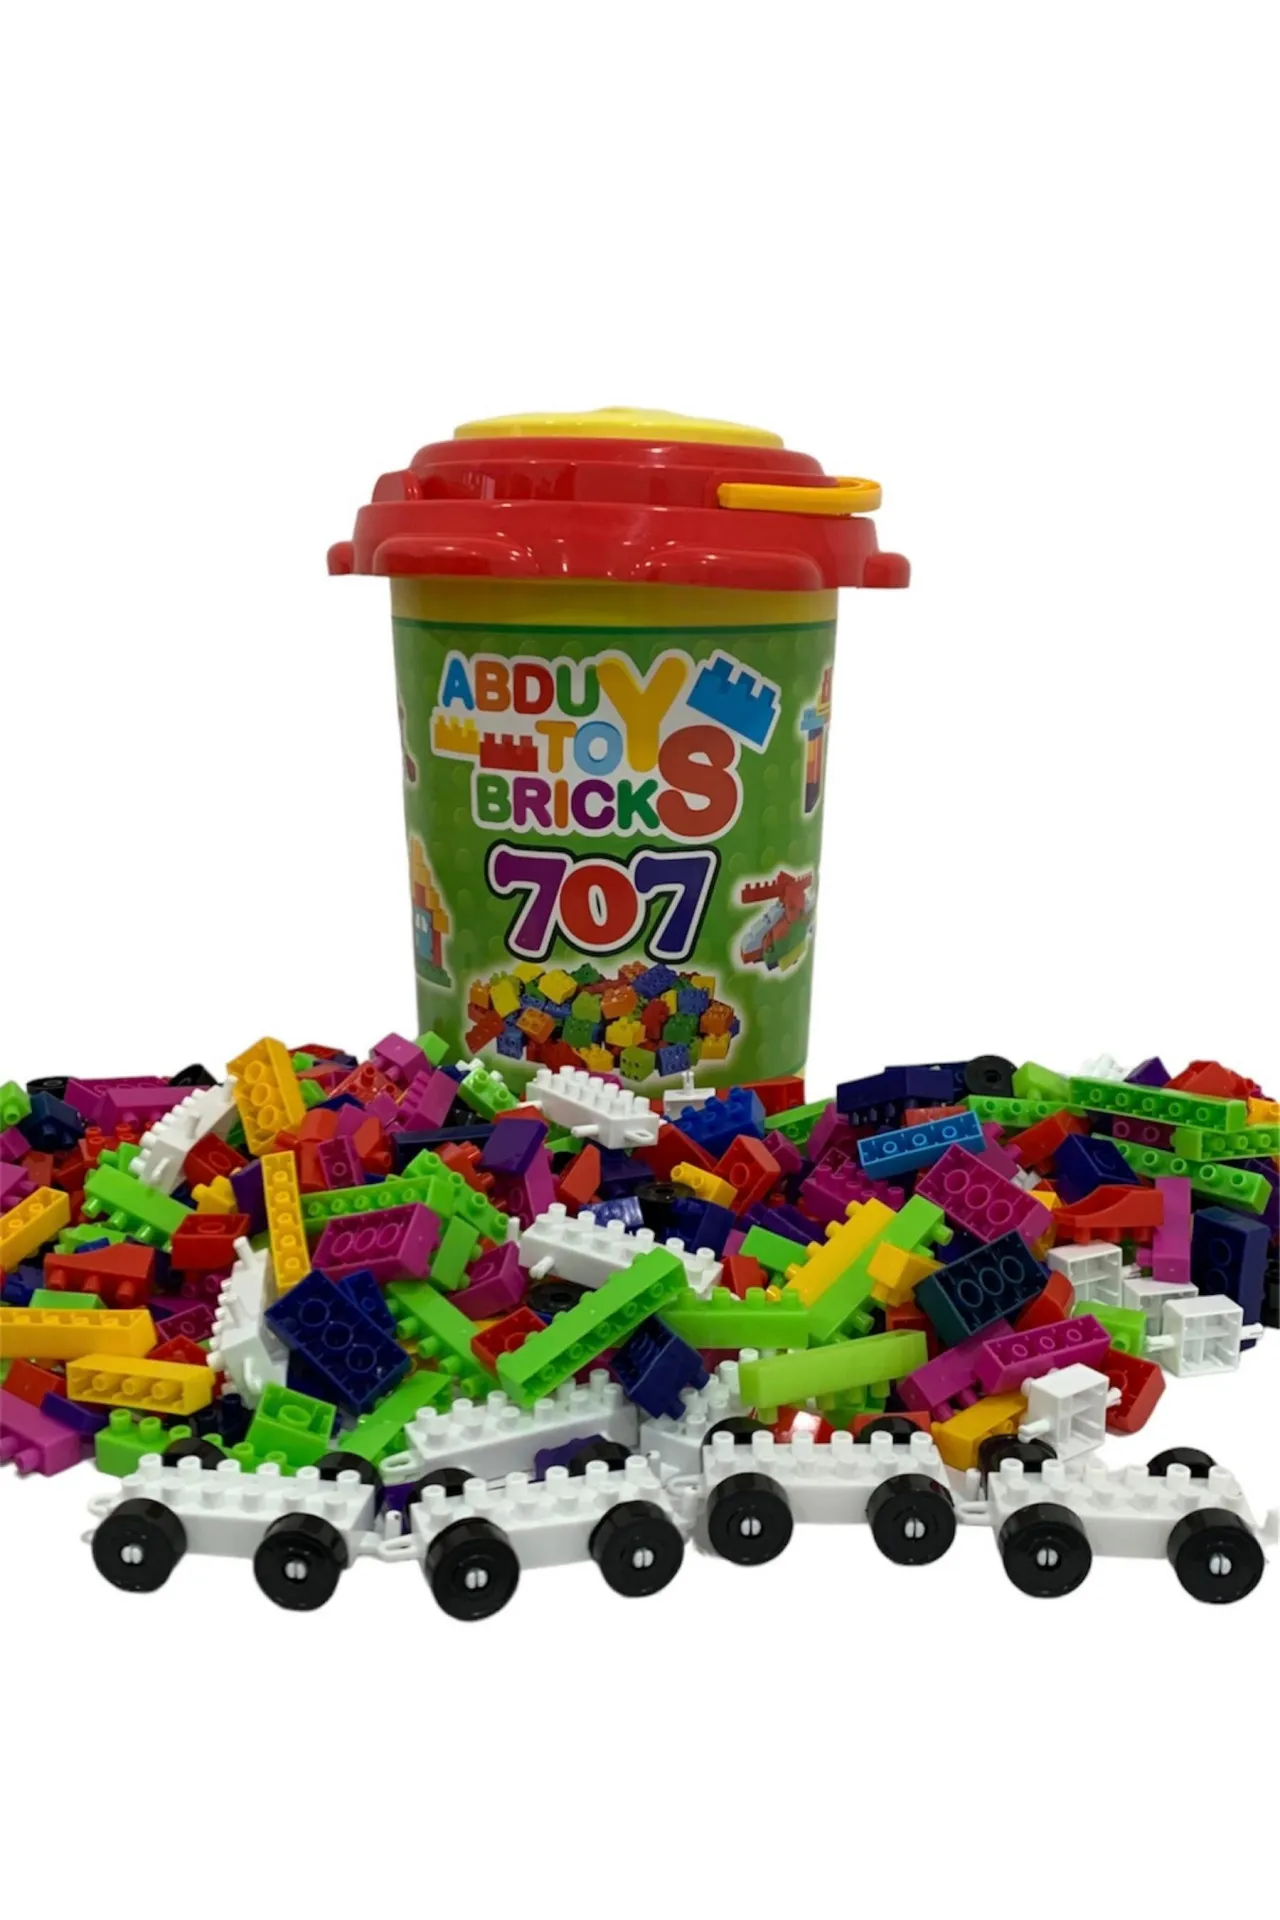 Lego 707 qismlari bilan chelak vs6584-1 shk sovg'a#1